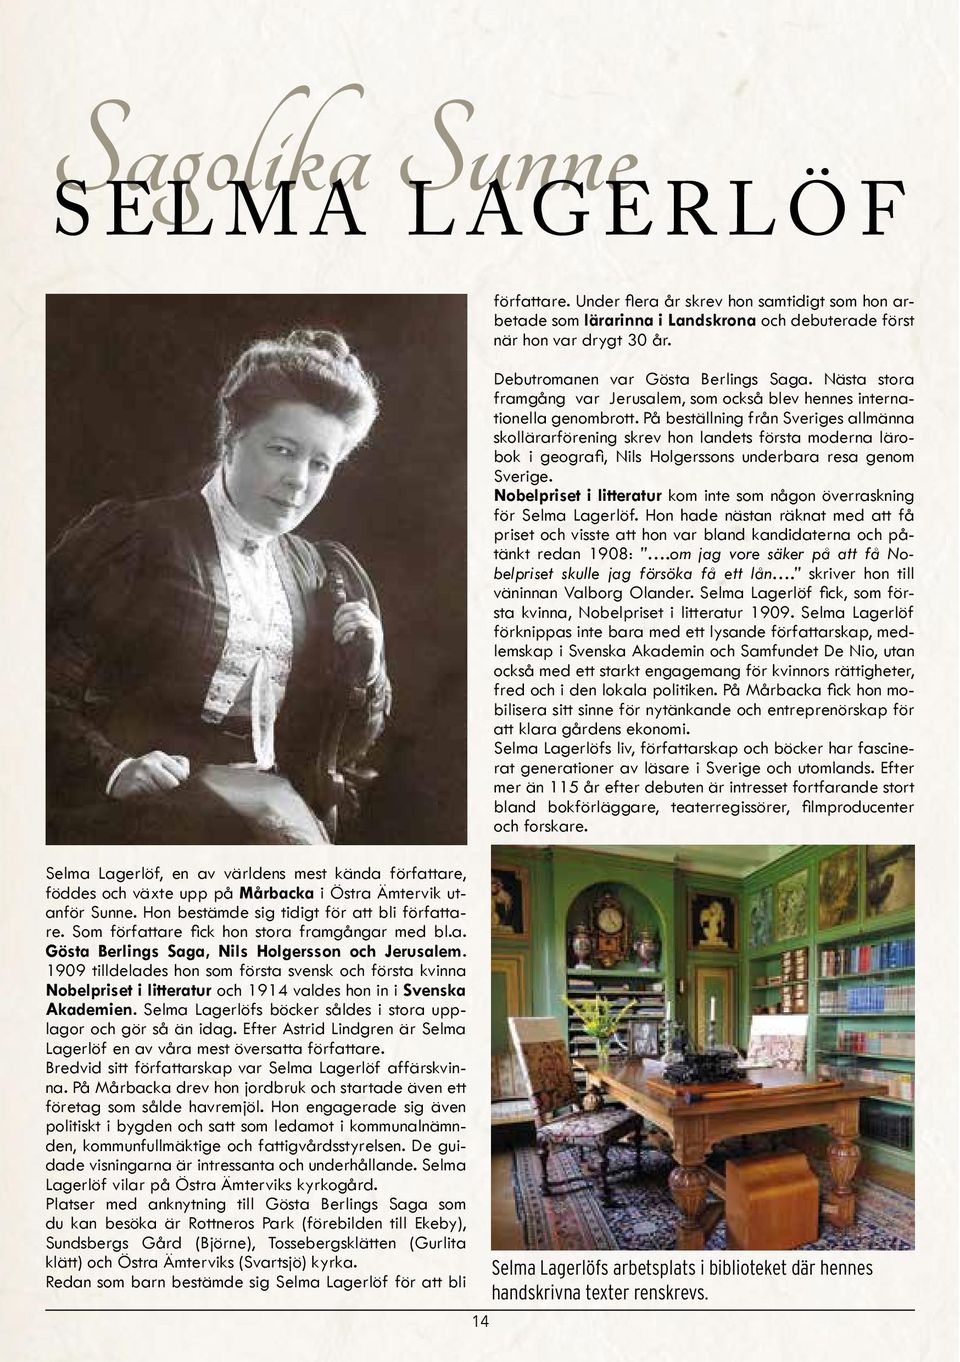 1909 tilldelades hon som första svensk och första kvinna Nobelpriset i litteratur och 1914 valdes hon in i Svenska Akademien. Selma Lagerlöfs böcker såldes i stora upplagor och gör så än idag.